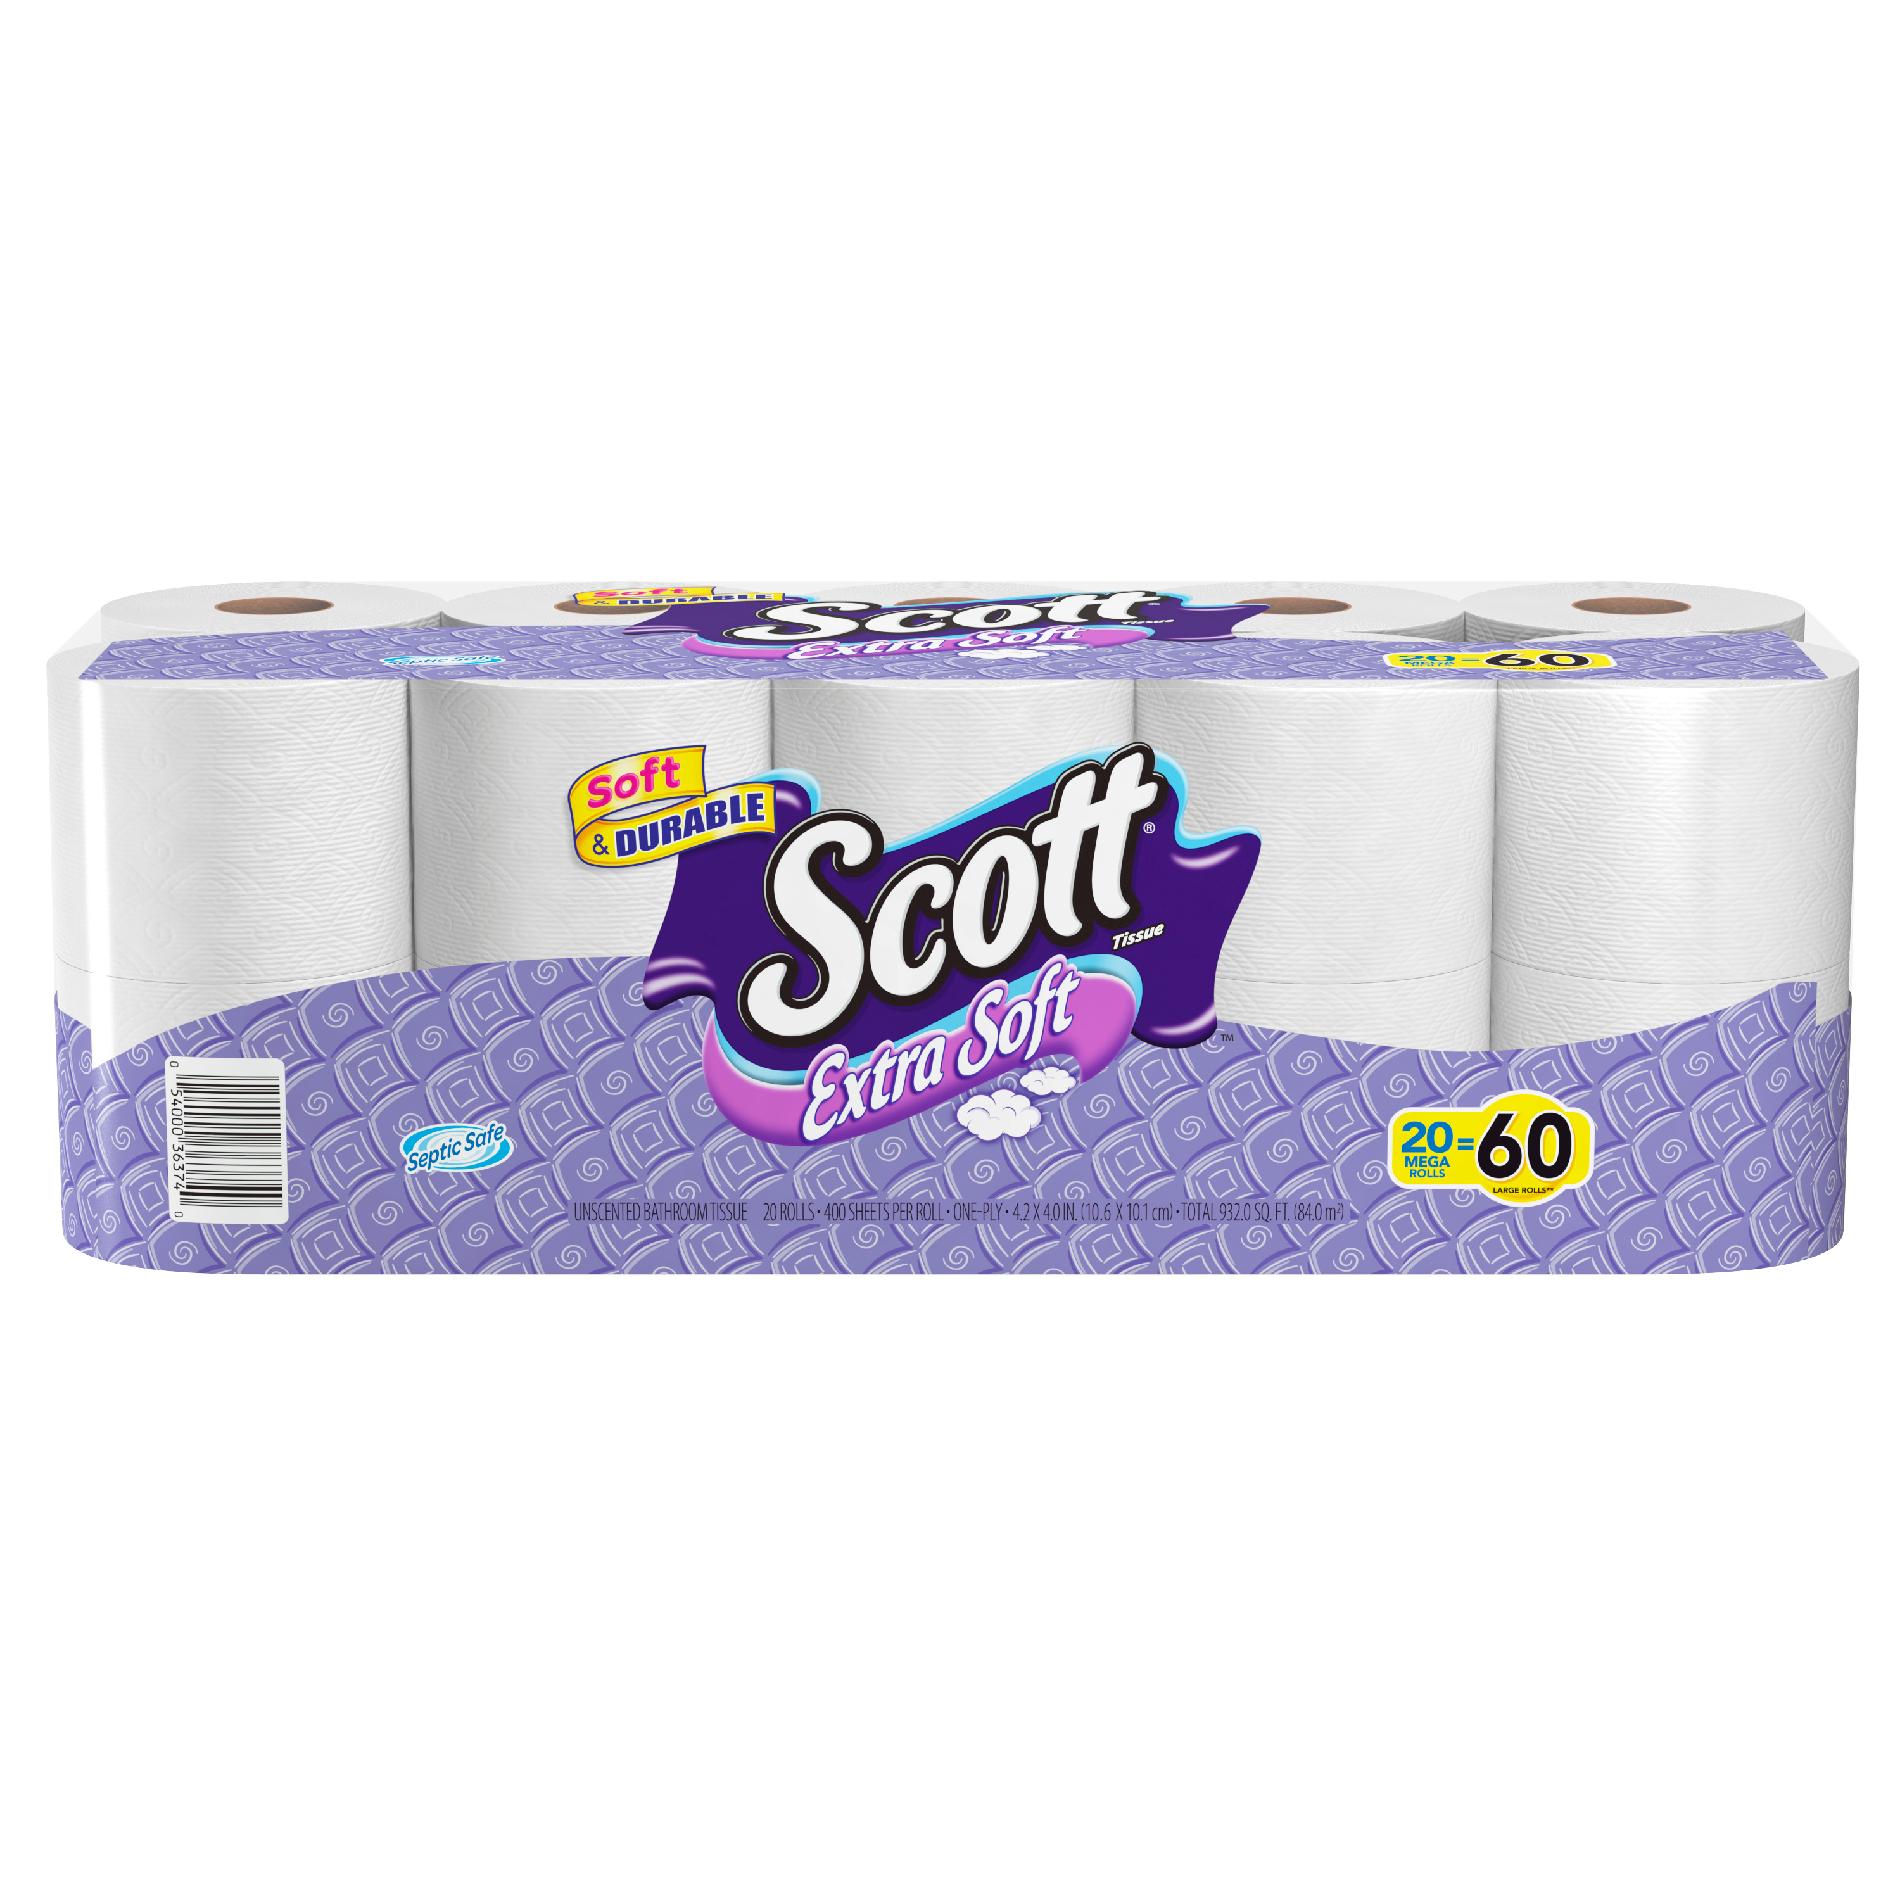 Scott Extra Soft Mega Roll Tissue, 20 Rolls